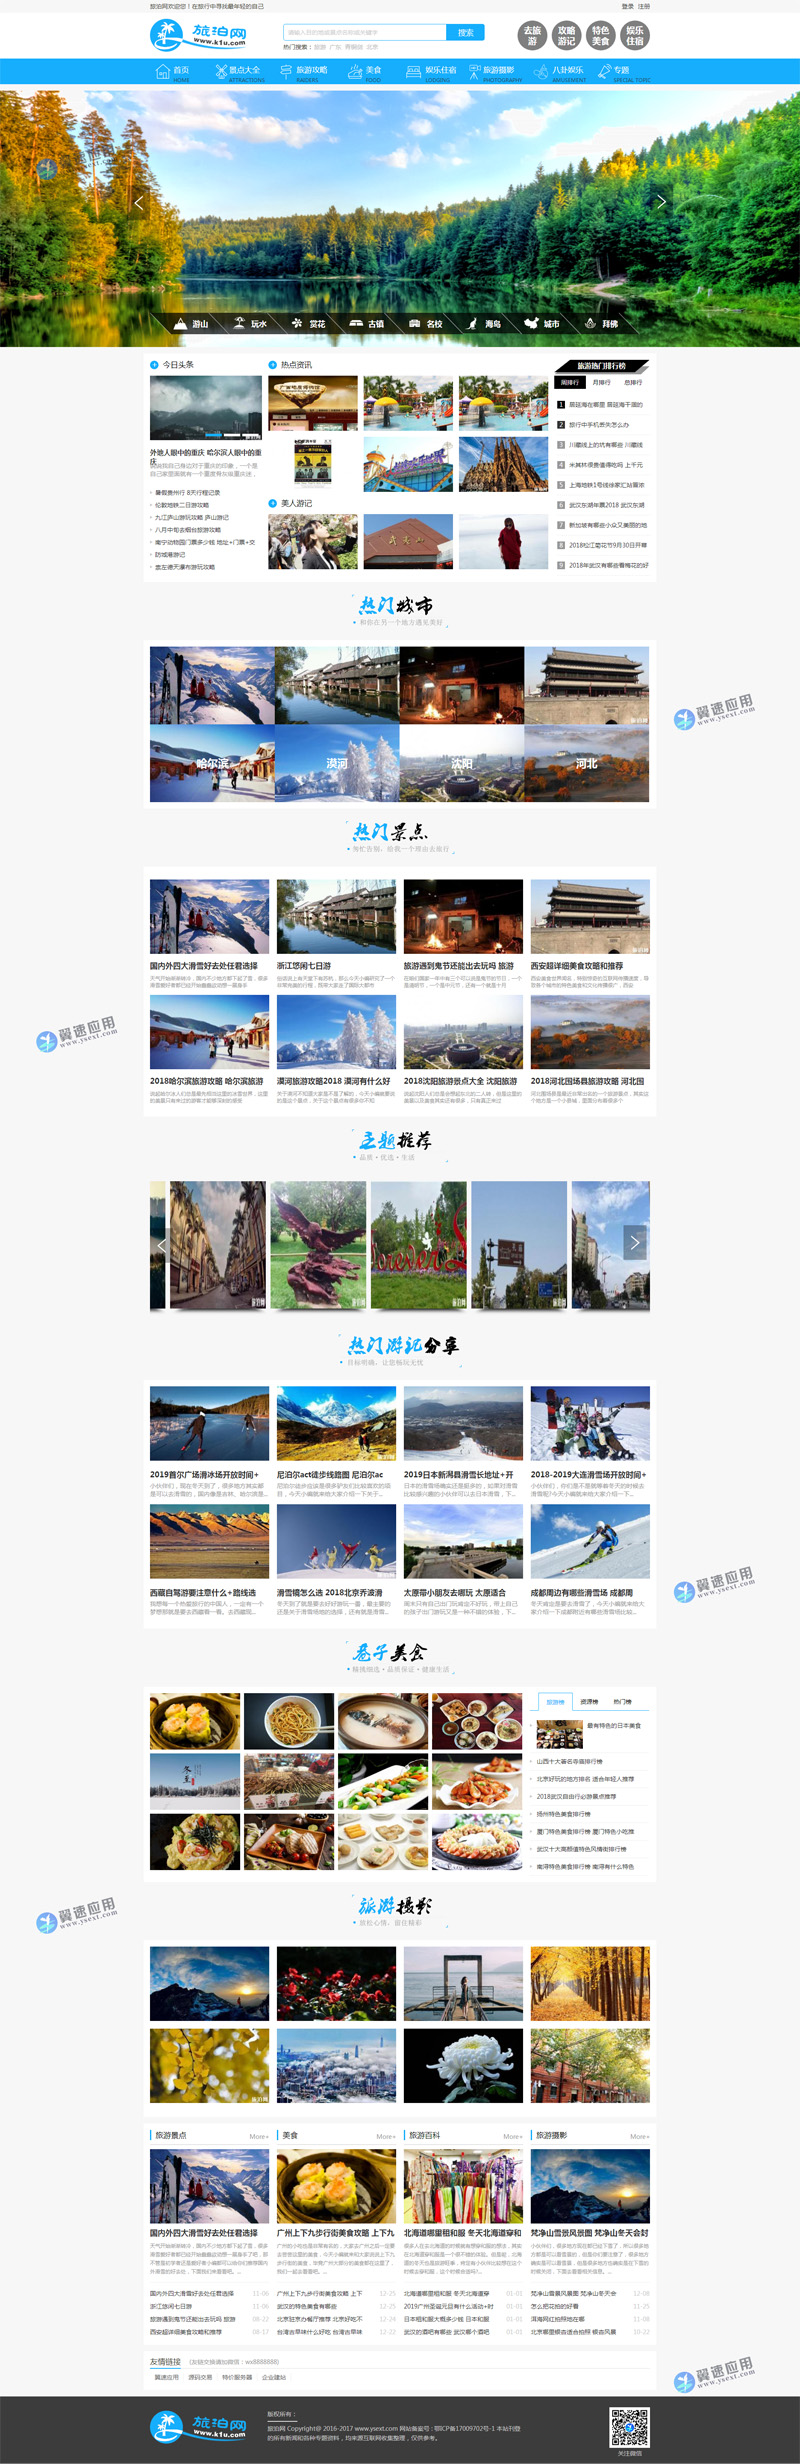 帝国CMS旅游经典展示型网站图片.jpg